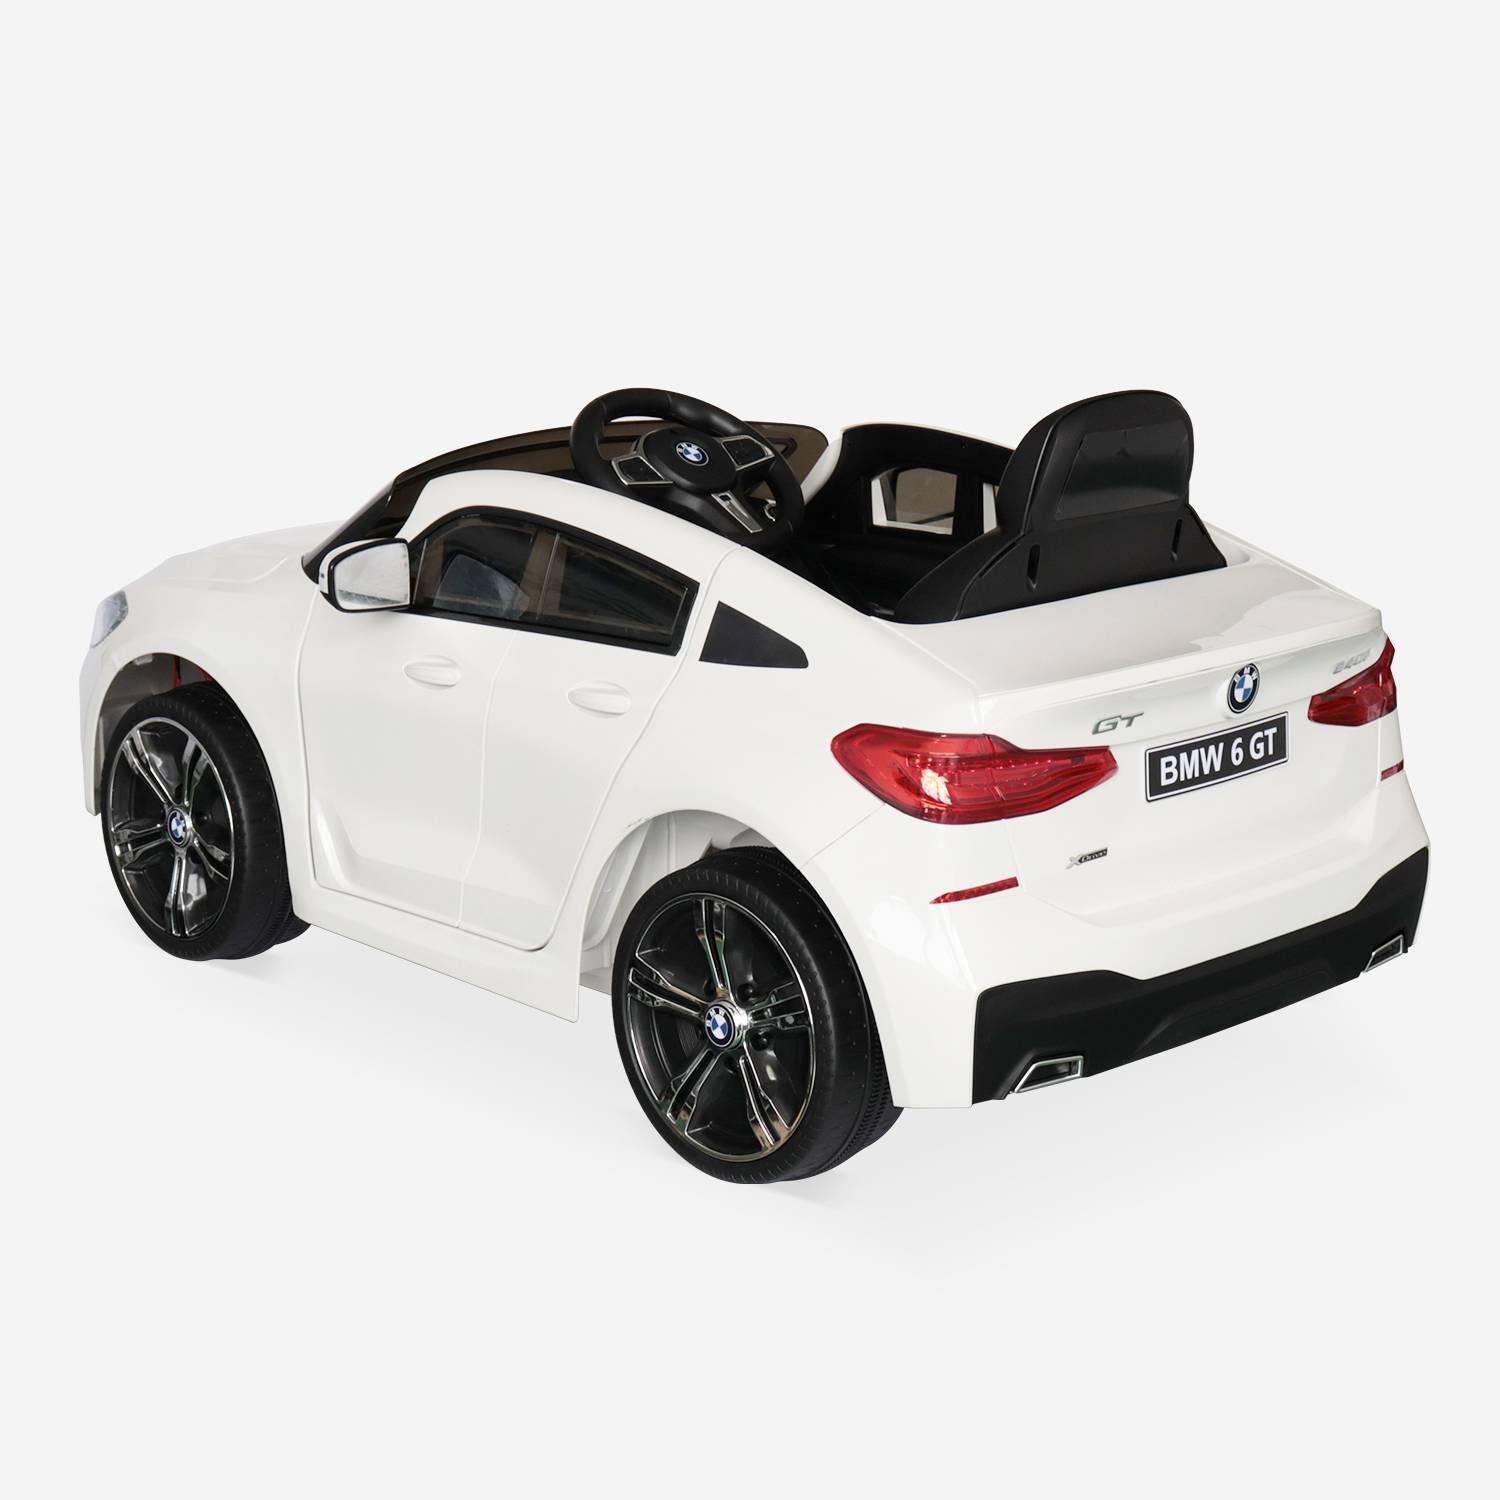 BMW Série 6 GT Gran Turismo branco, carro elétrico para crianças 12V 4 Ah, 1 lugar, com rádio e controlo remoto Photo5